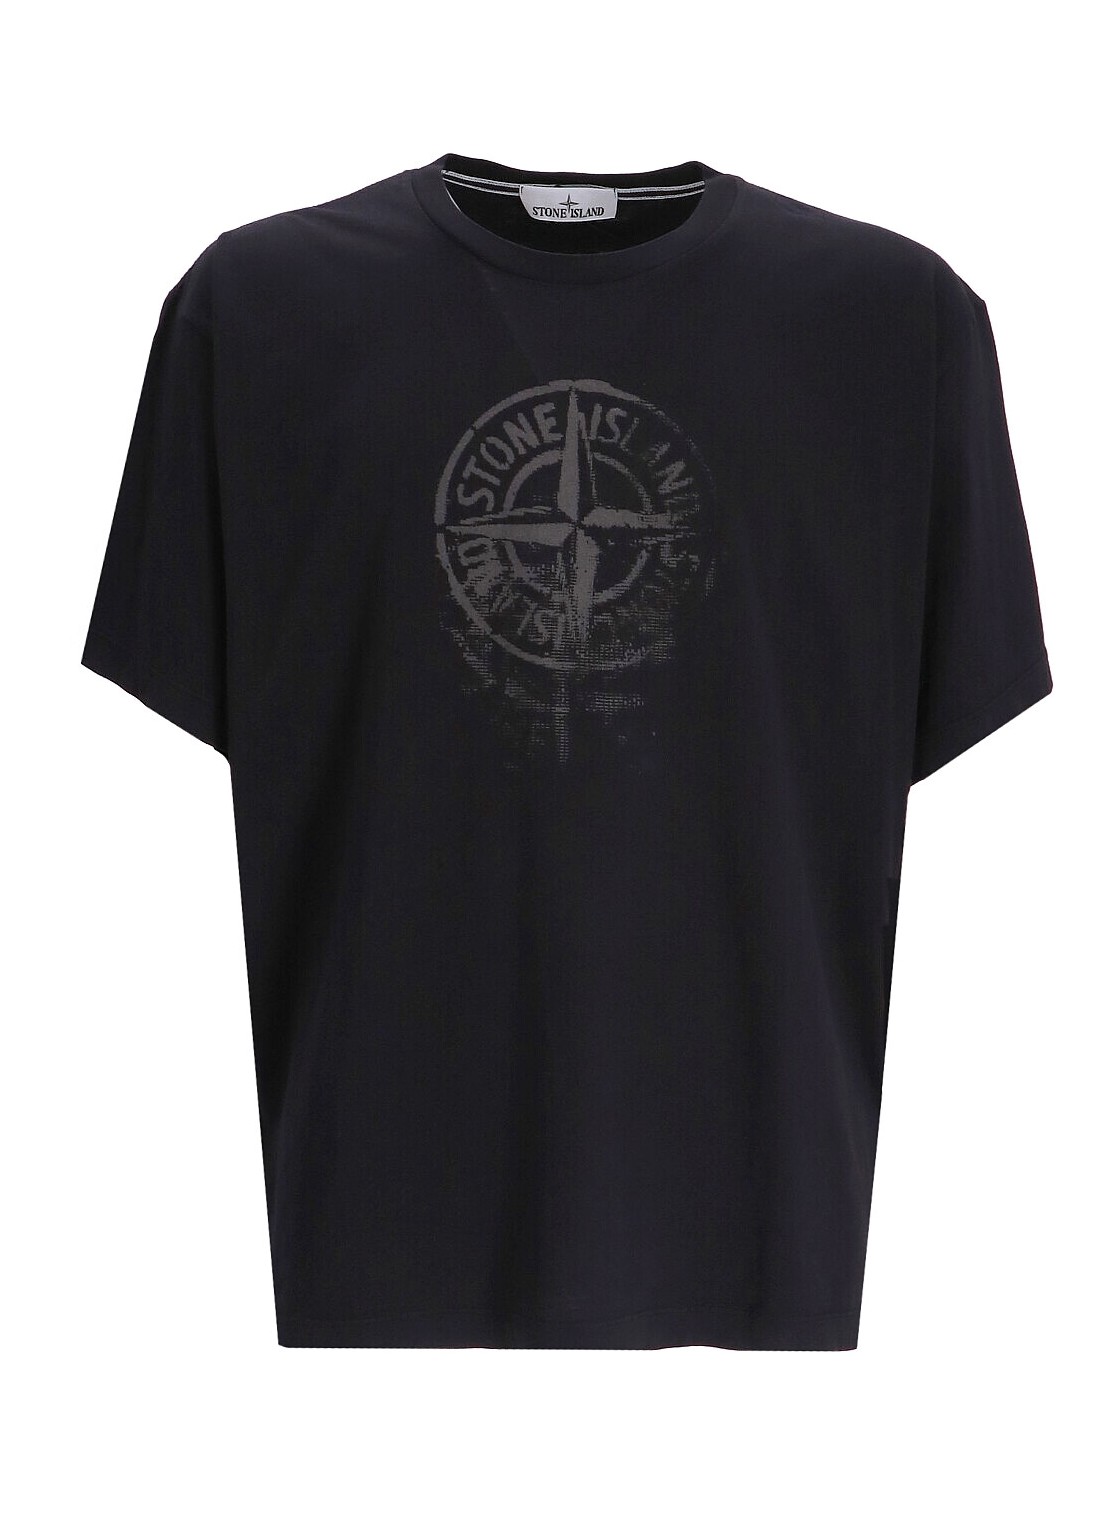 Camiseta stone island t-shirt man t shirt 80152rc87 a0029 talla XL
 